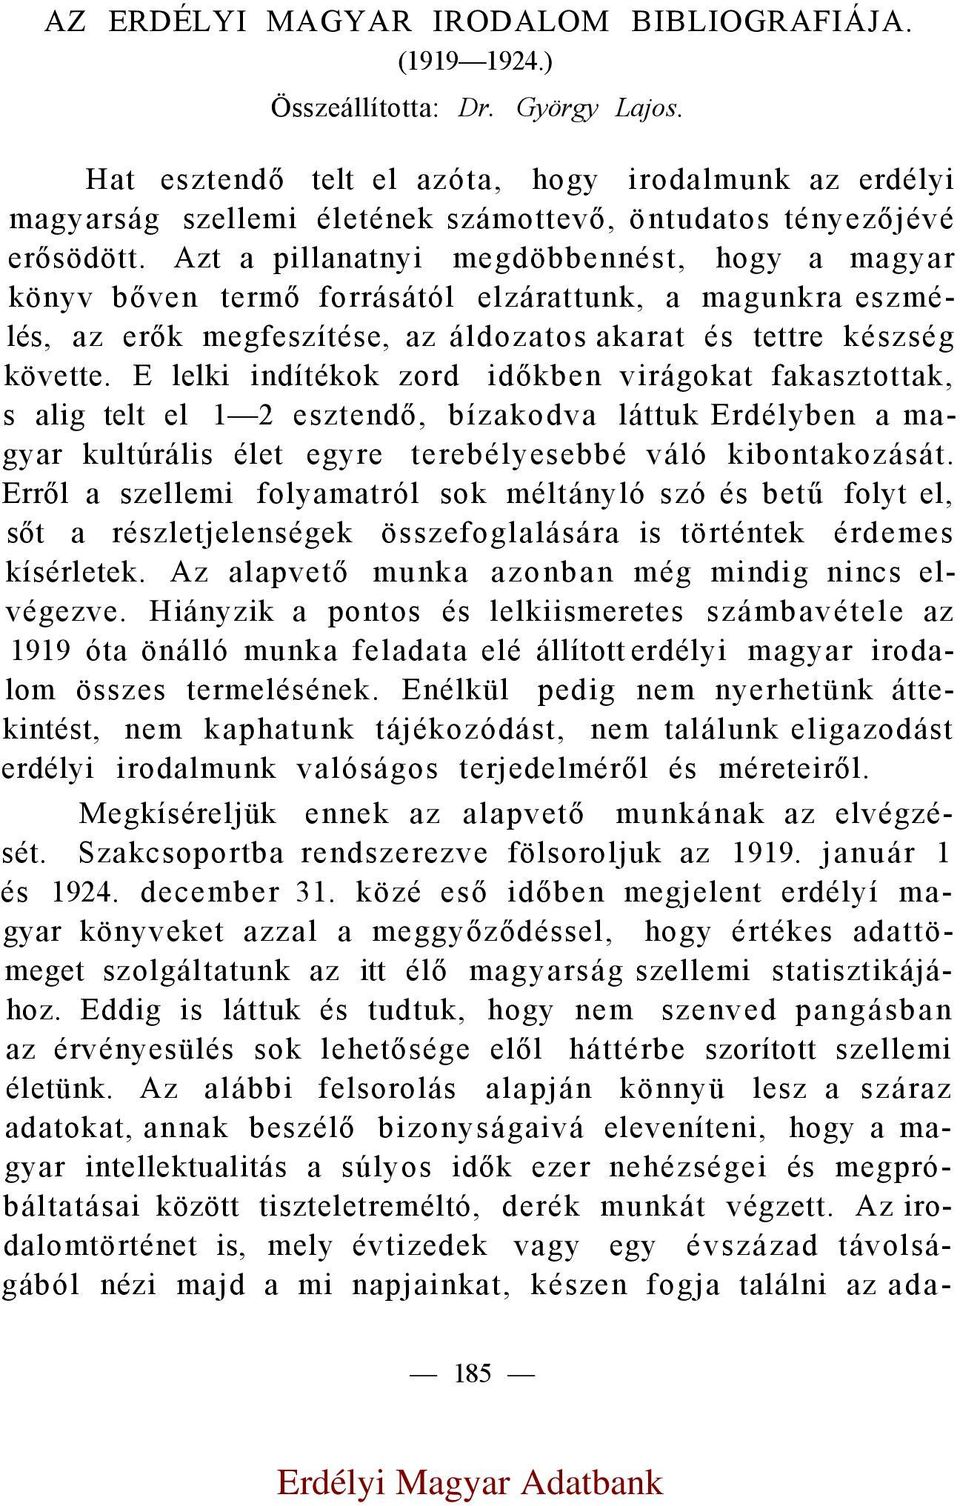 Erdélyi Magyar Adatbank - PDF Free Download